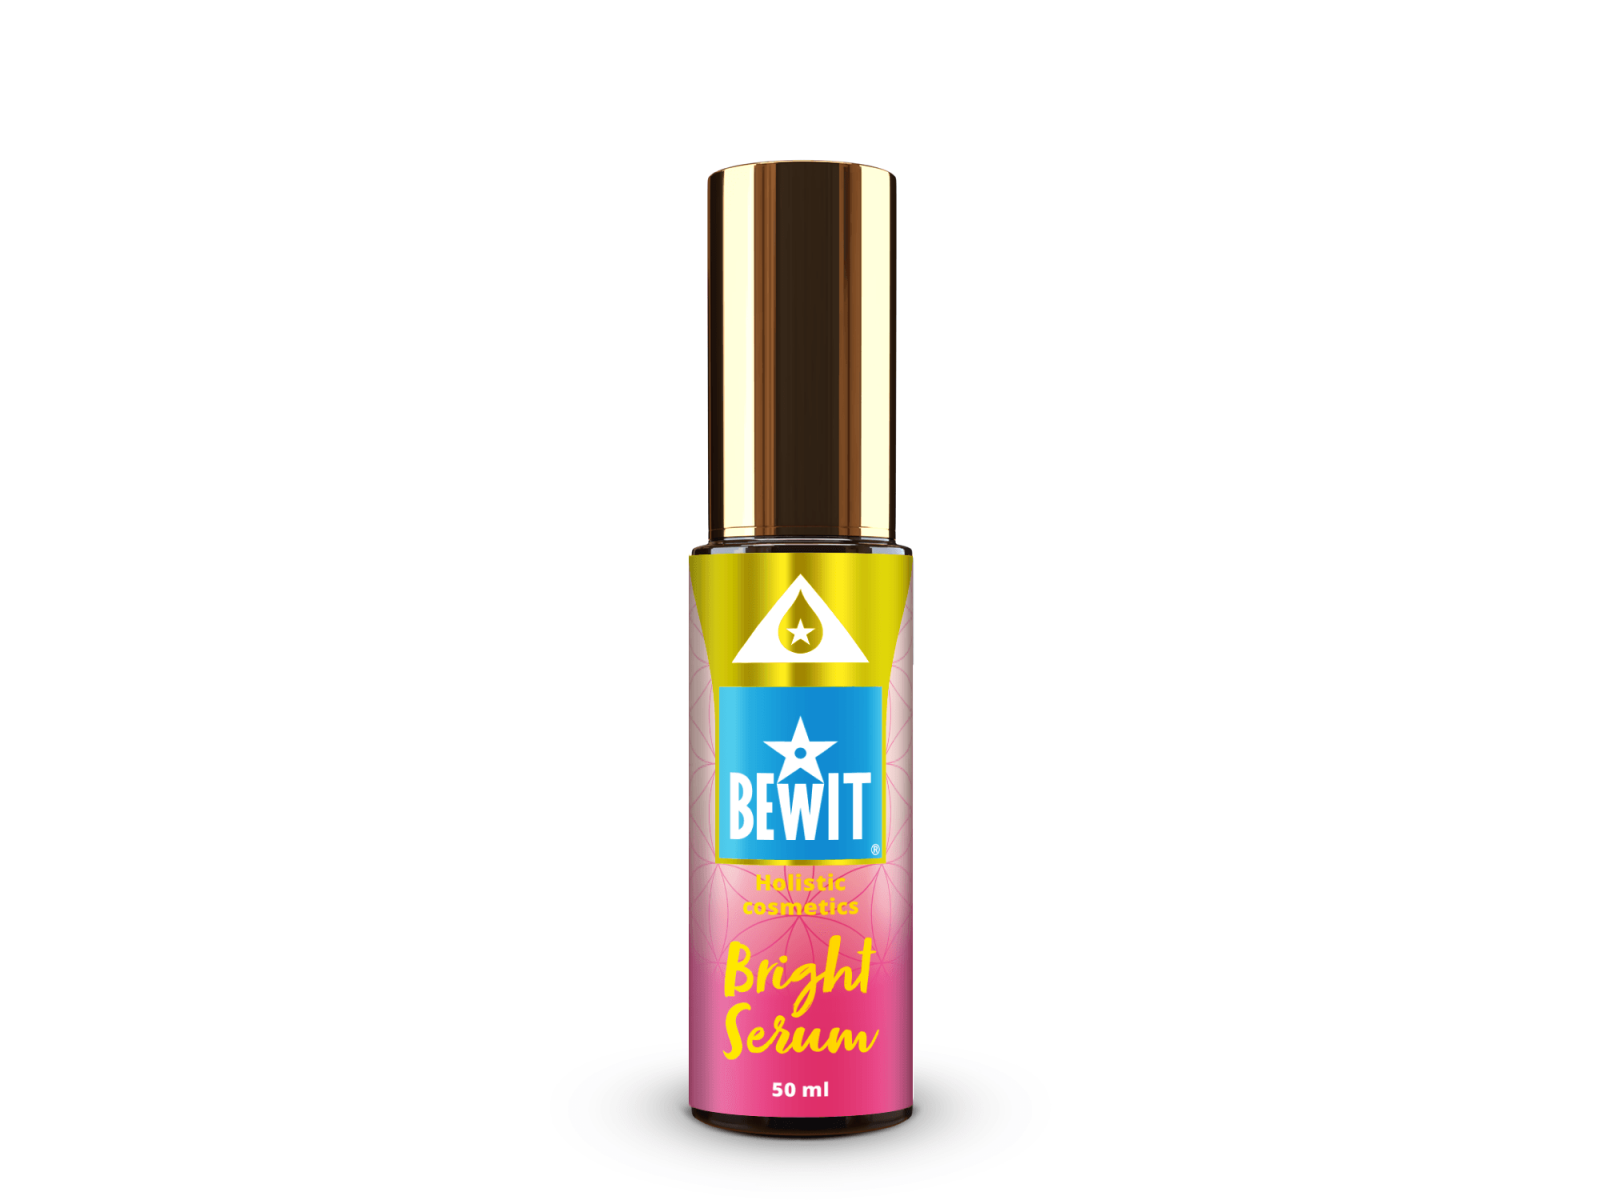 BEWIT BRIGHT SERUM - An exclusive brightening serum - 2